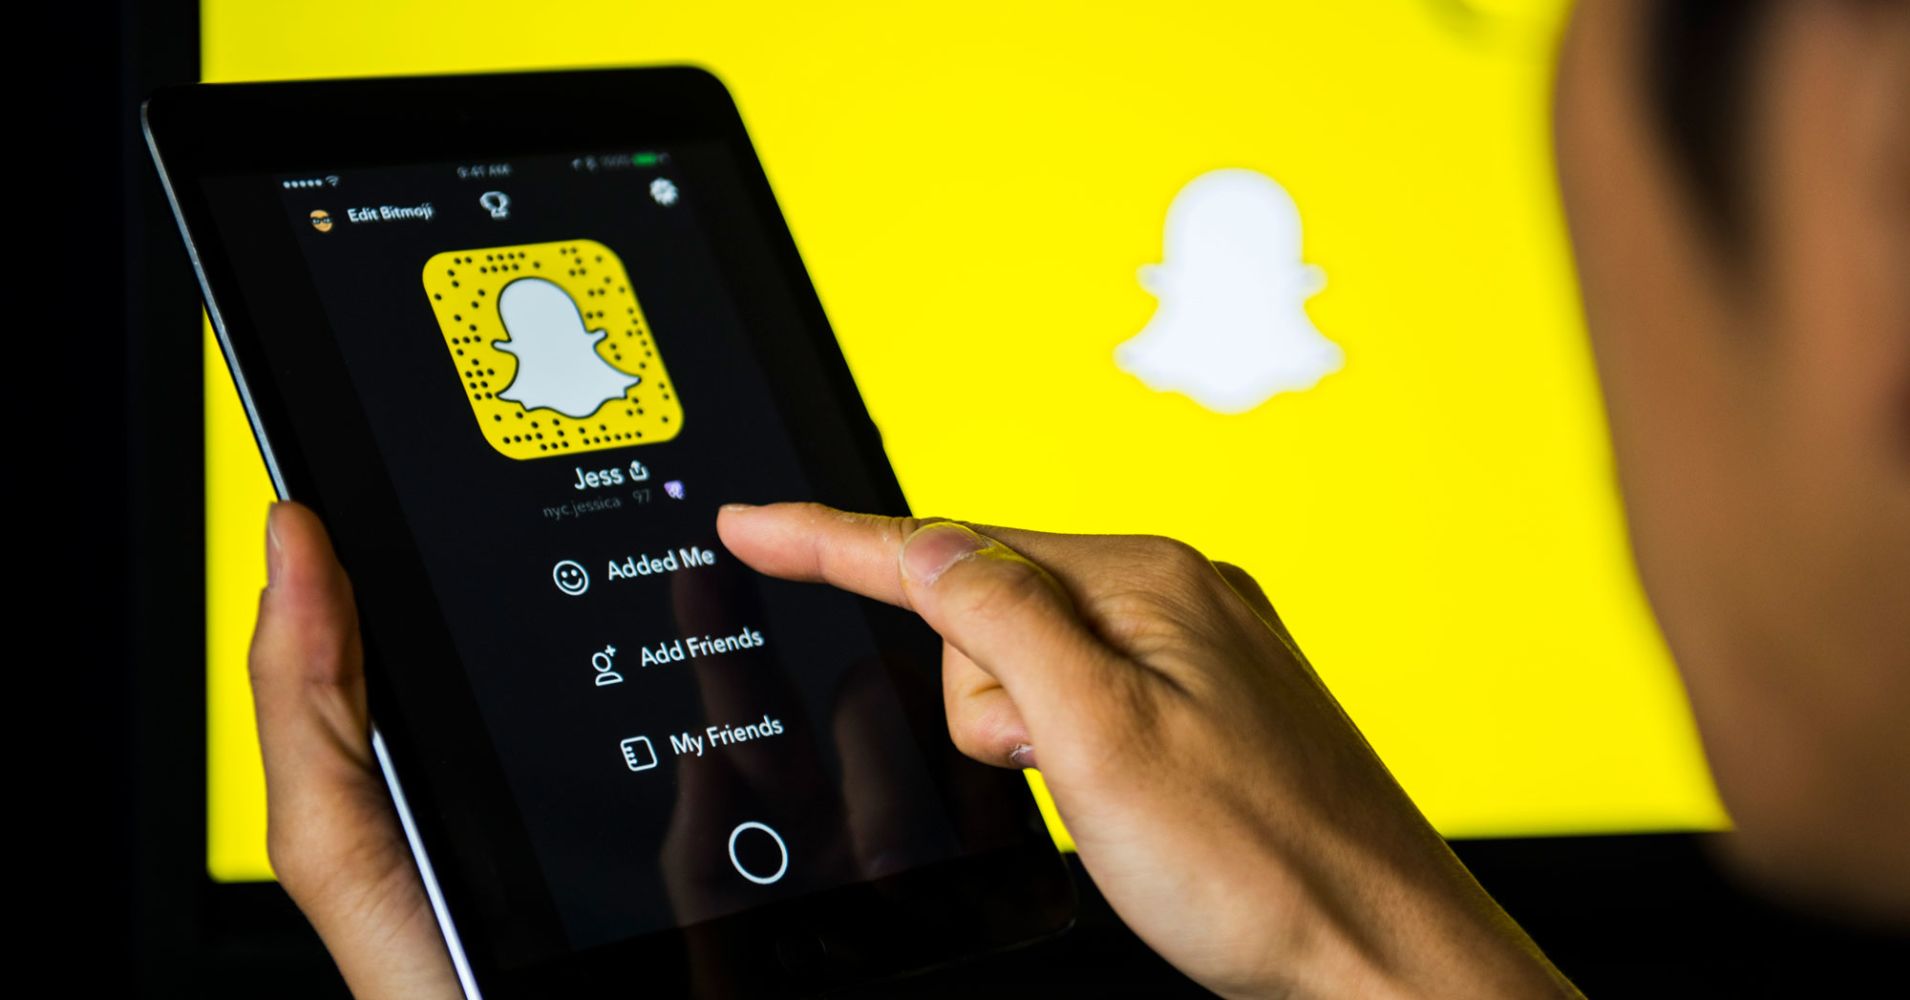 Snapchat a promocja marki. Czy wykorzystanie snapchata ma potencjał marketingowy?